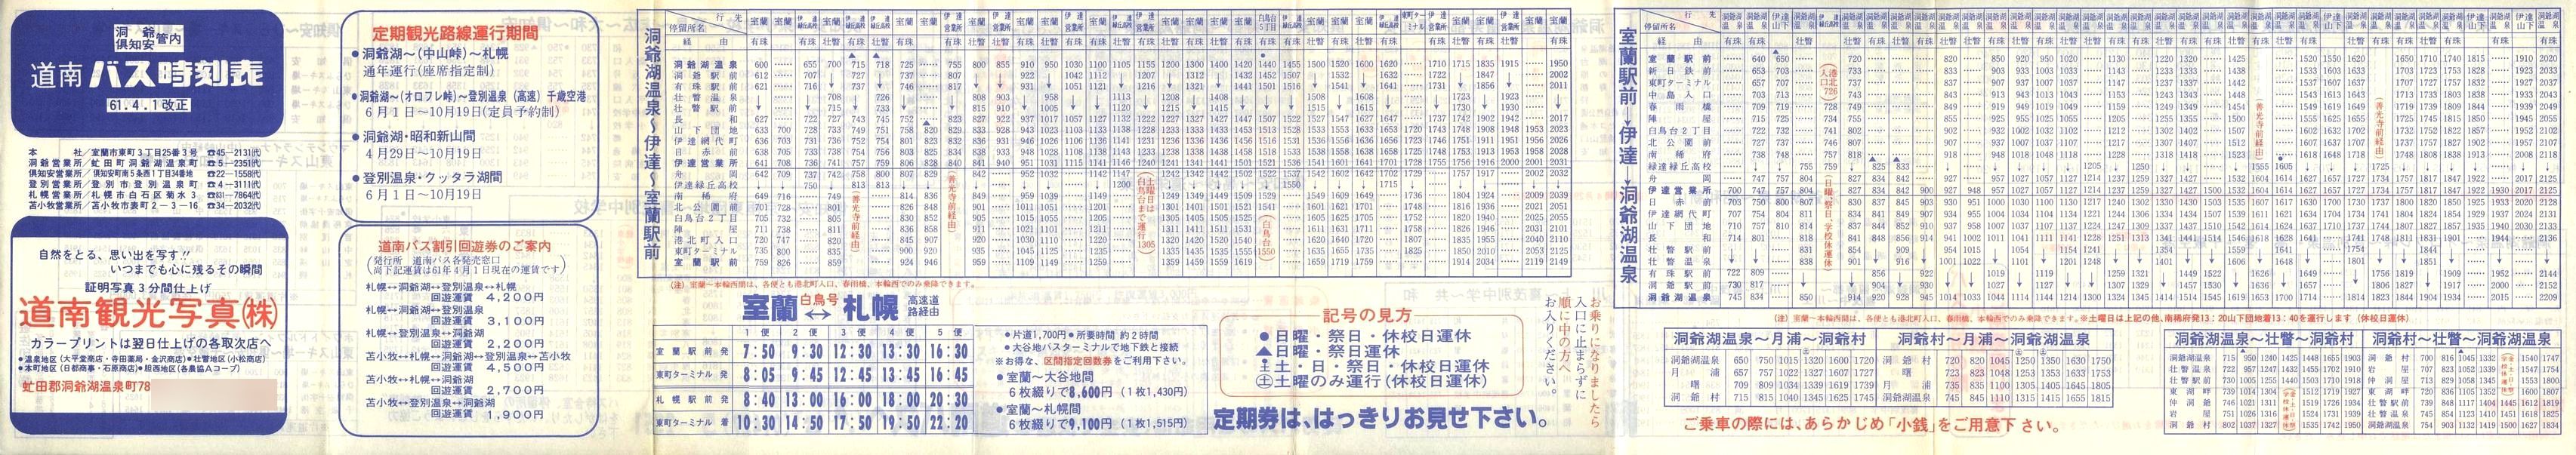 1986-04-01改正_道南バス_洞爺・伊達・倶知安管内時刻表表面